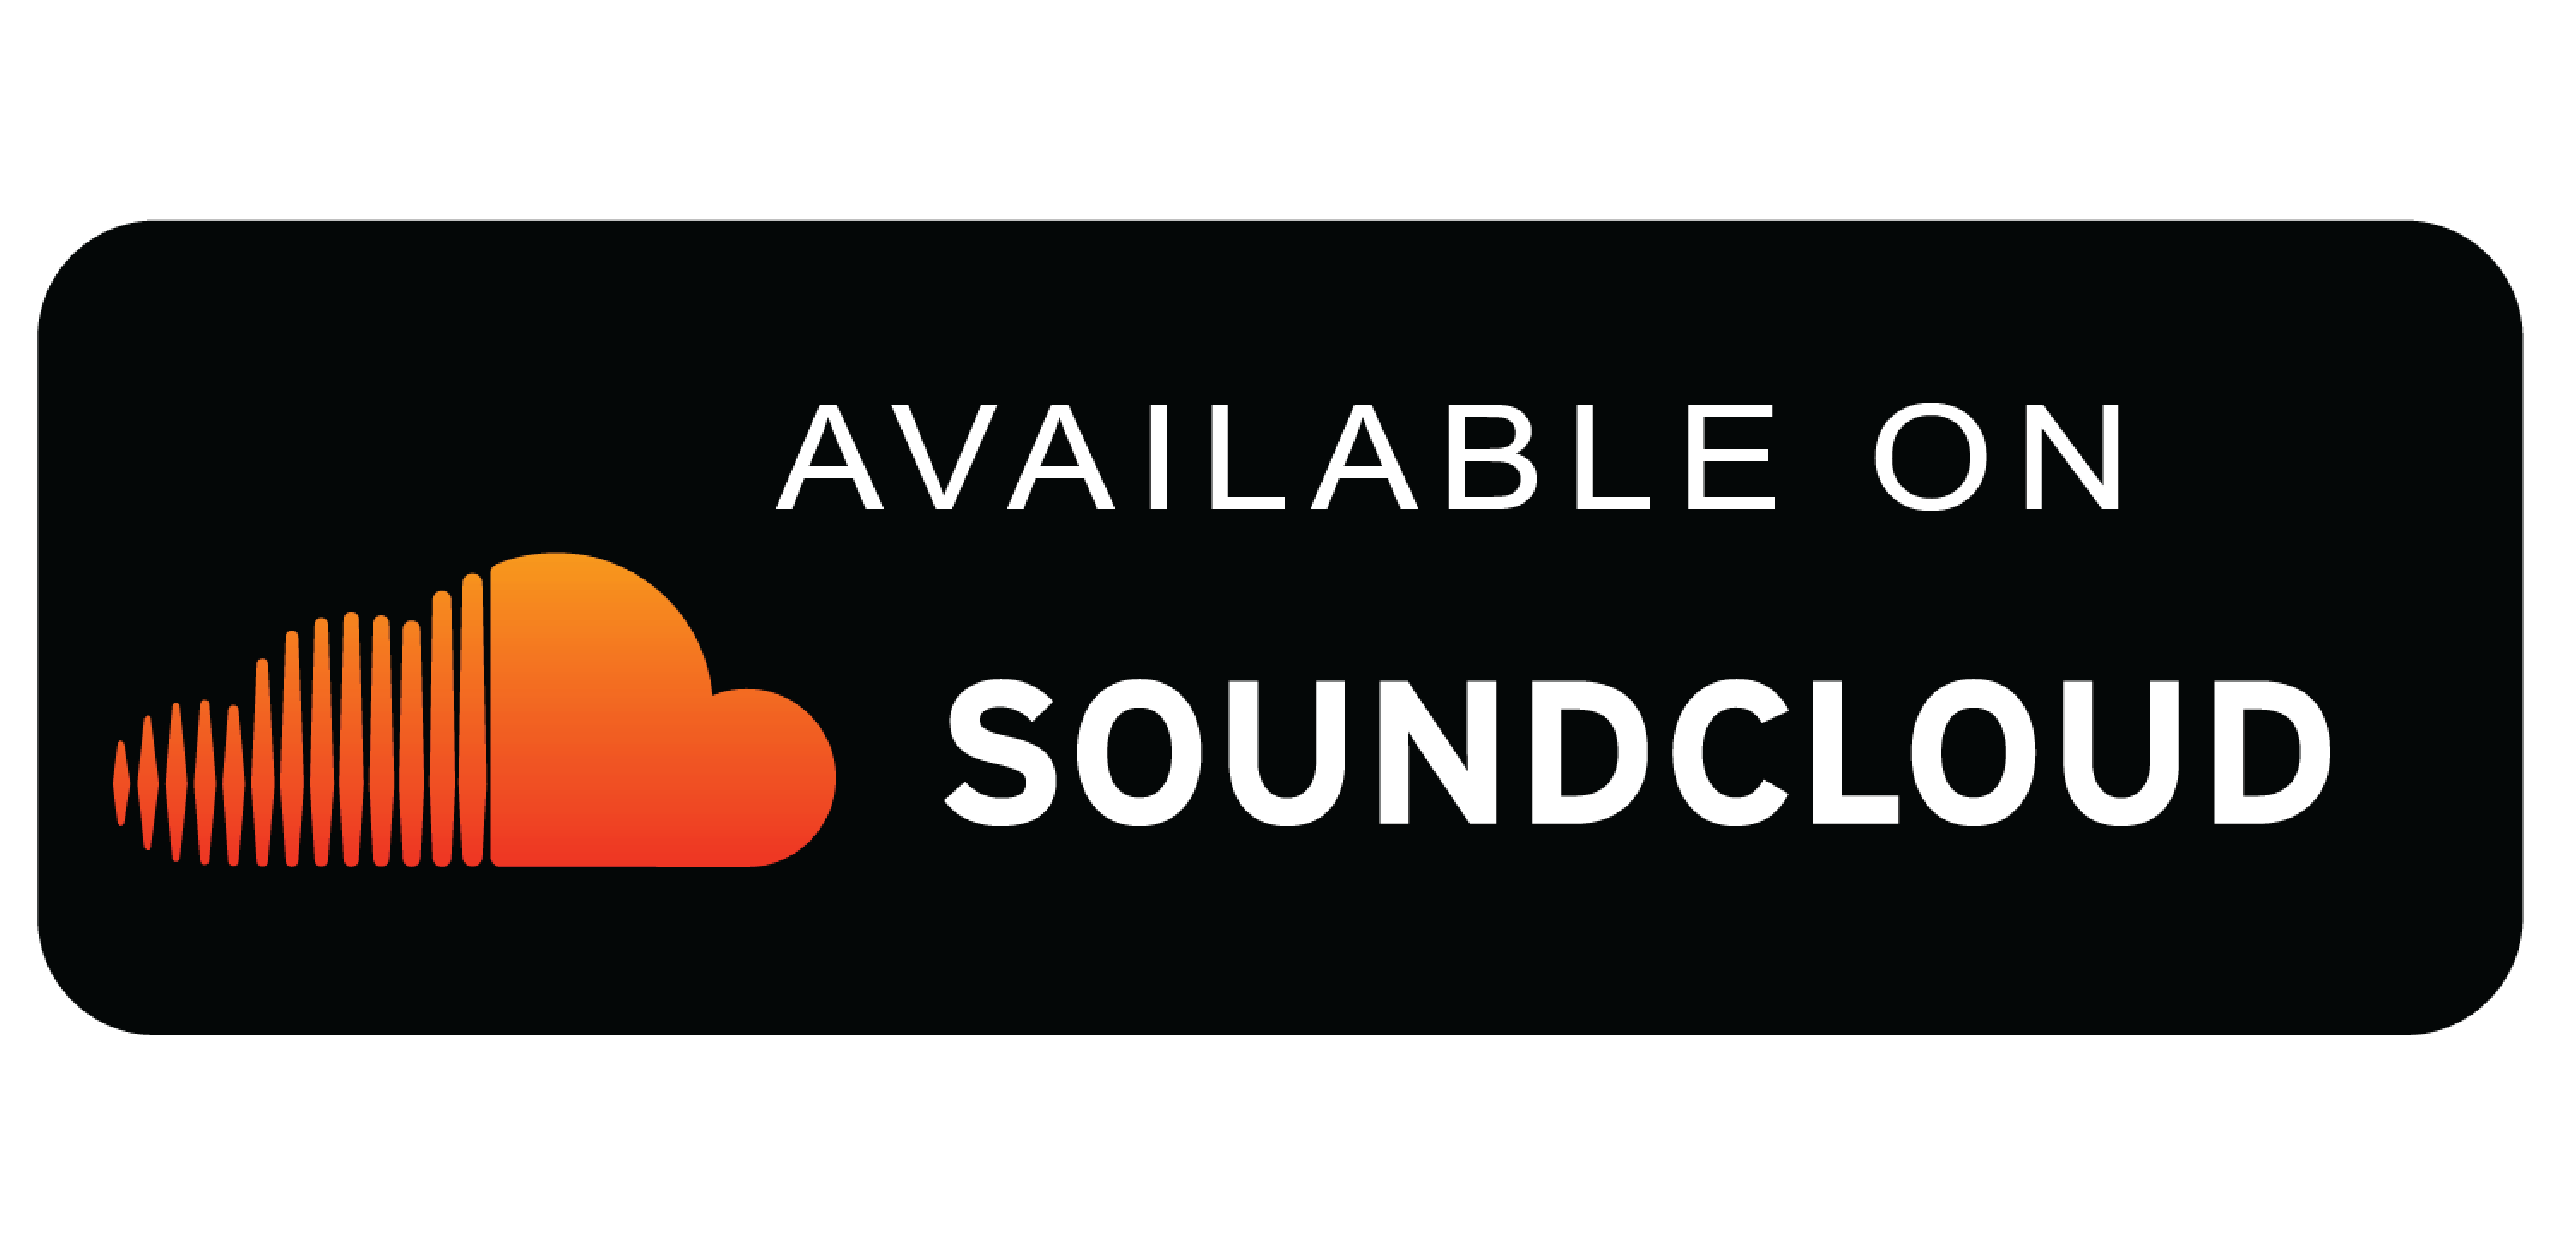 Слушать в полном формате. Soundcloud логотип. Саундклауд наклейка. Слушайте на soundcloud. Логотипы музыкальных площадок.